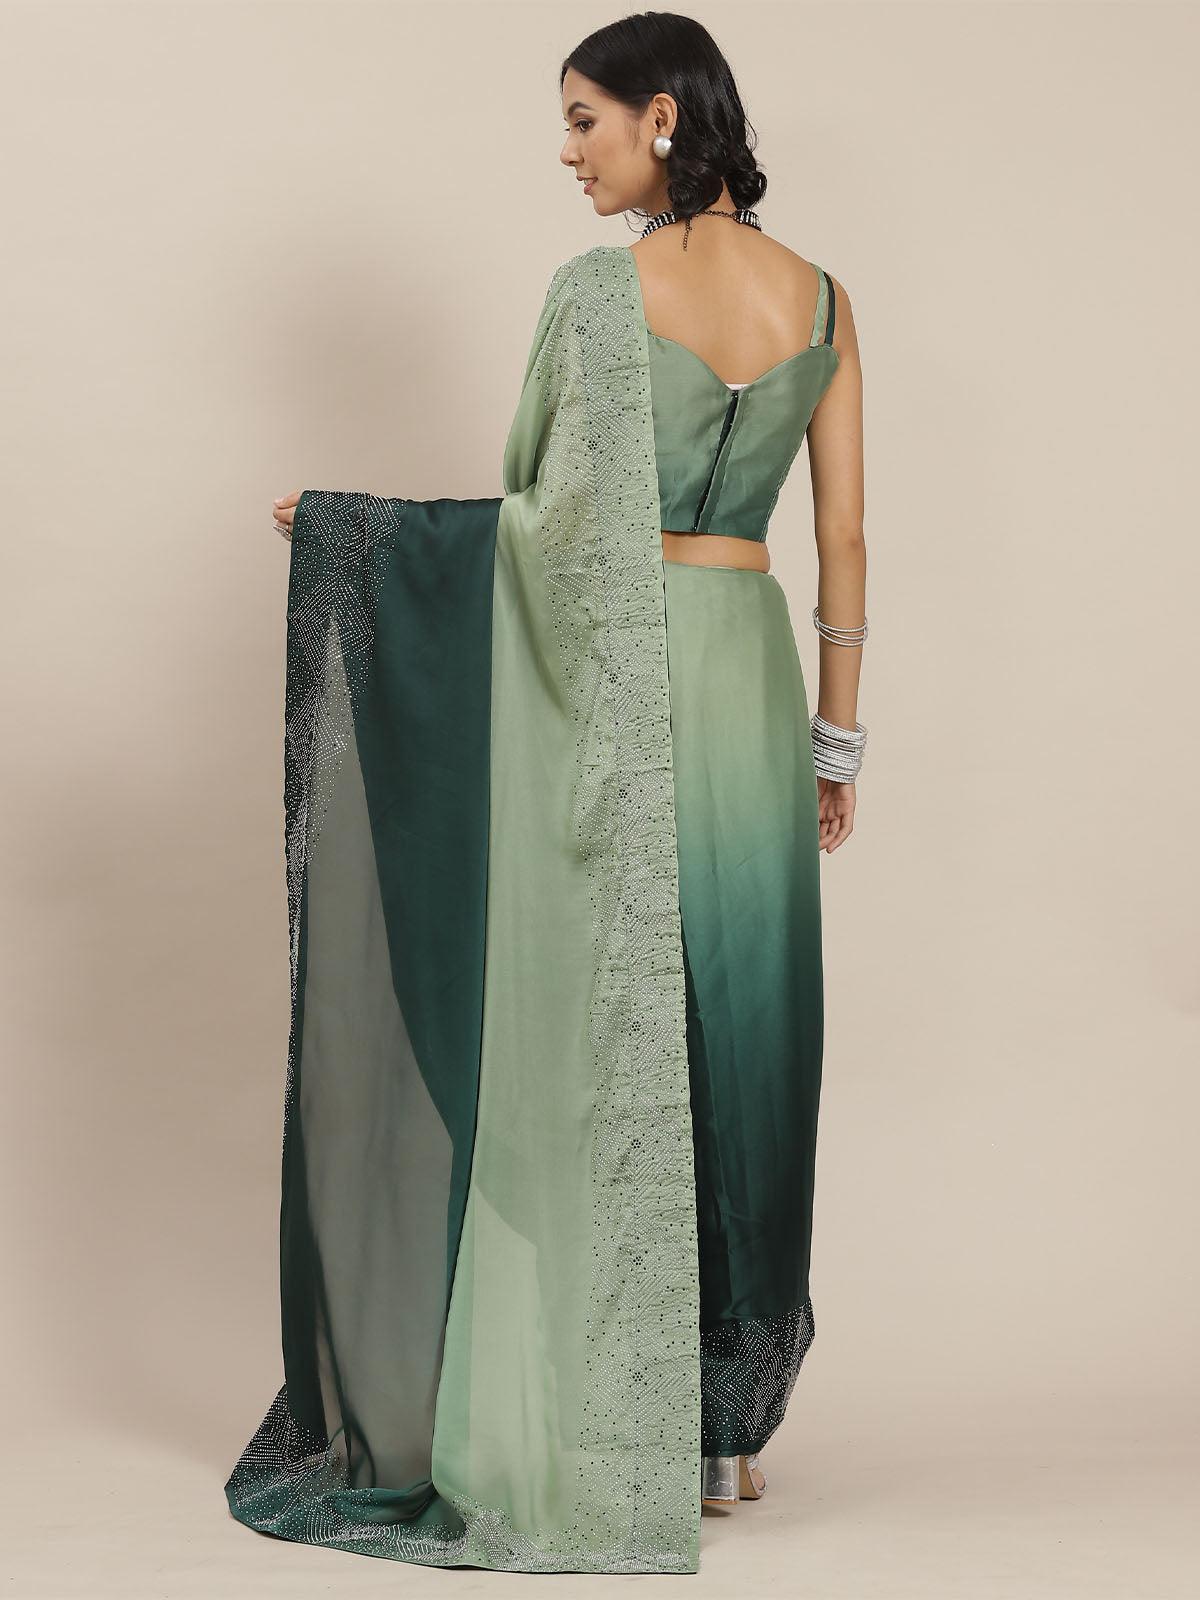 Women's Green Designer Ombre Colored Art Silk Saree - Odette